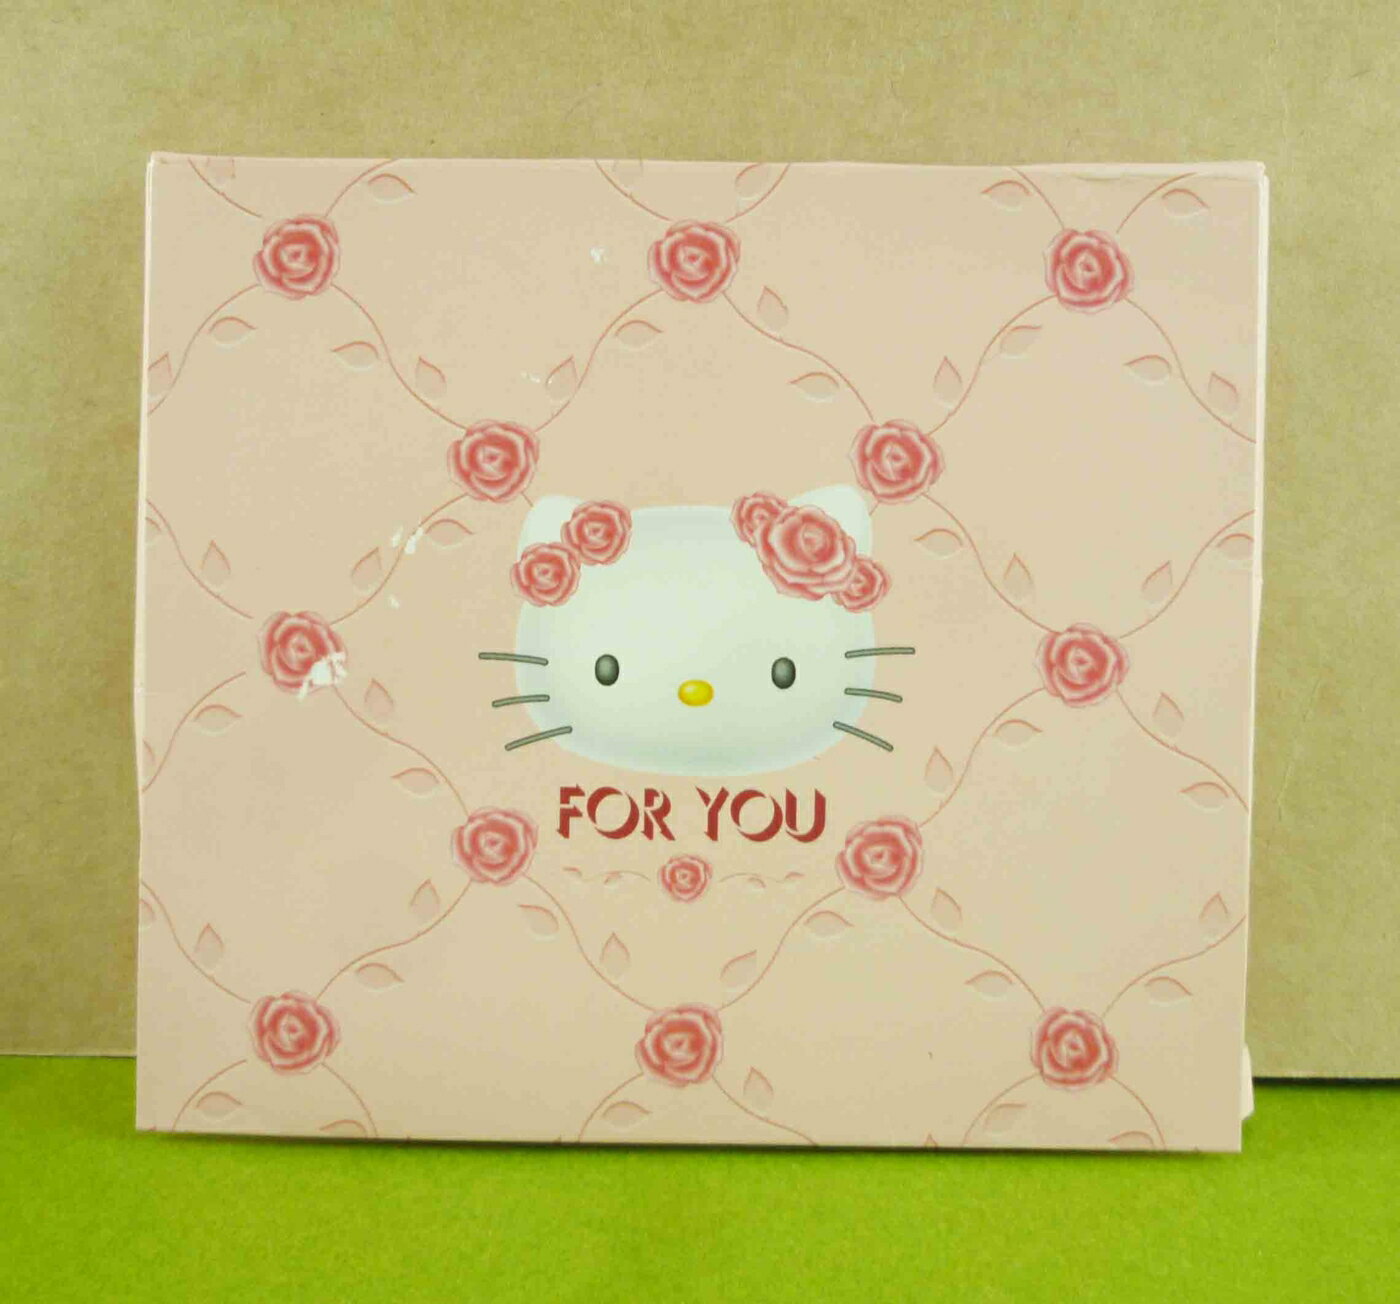 【震撼精品百貨】Hello Kitty 凱蒂貓 立體卡片-粉玫瑰 震撼日式精品百貨